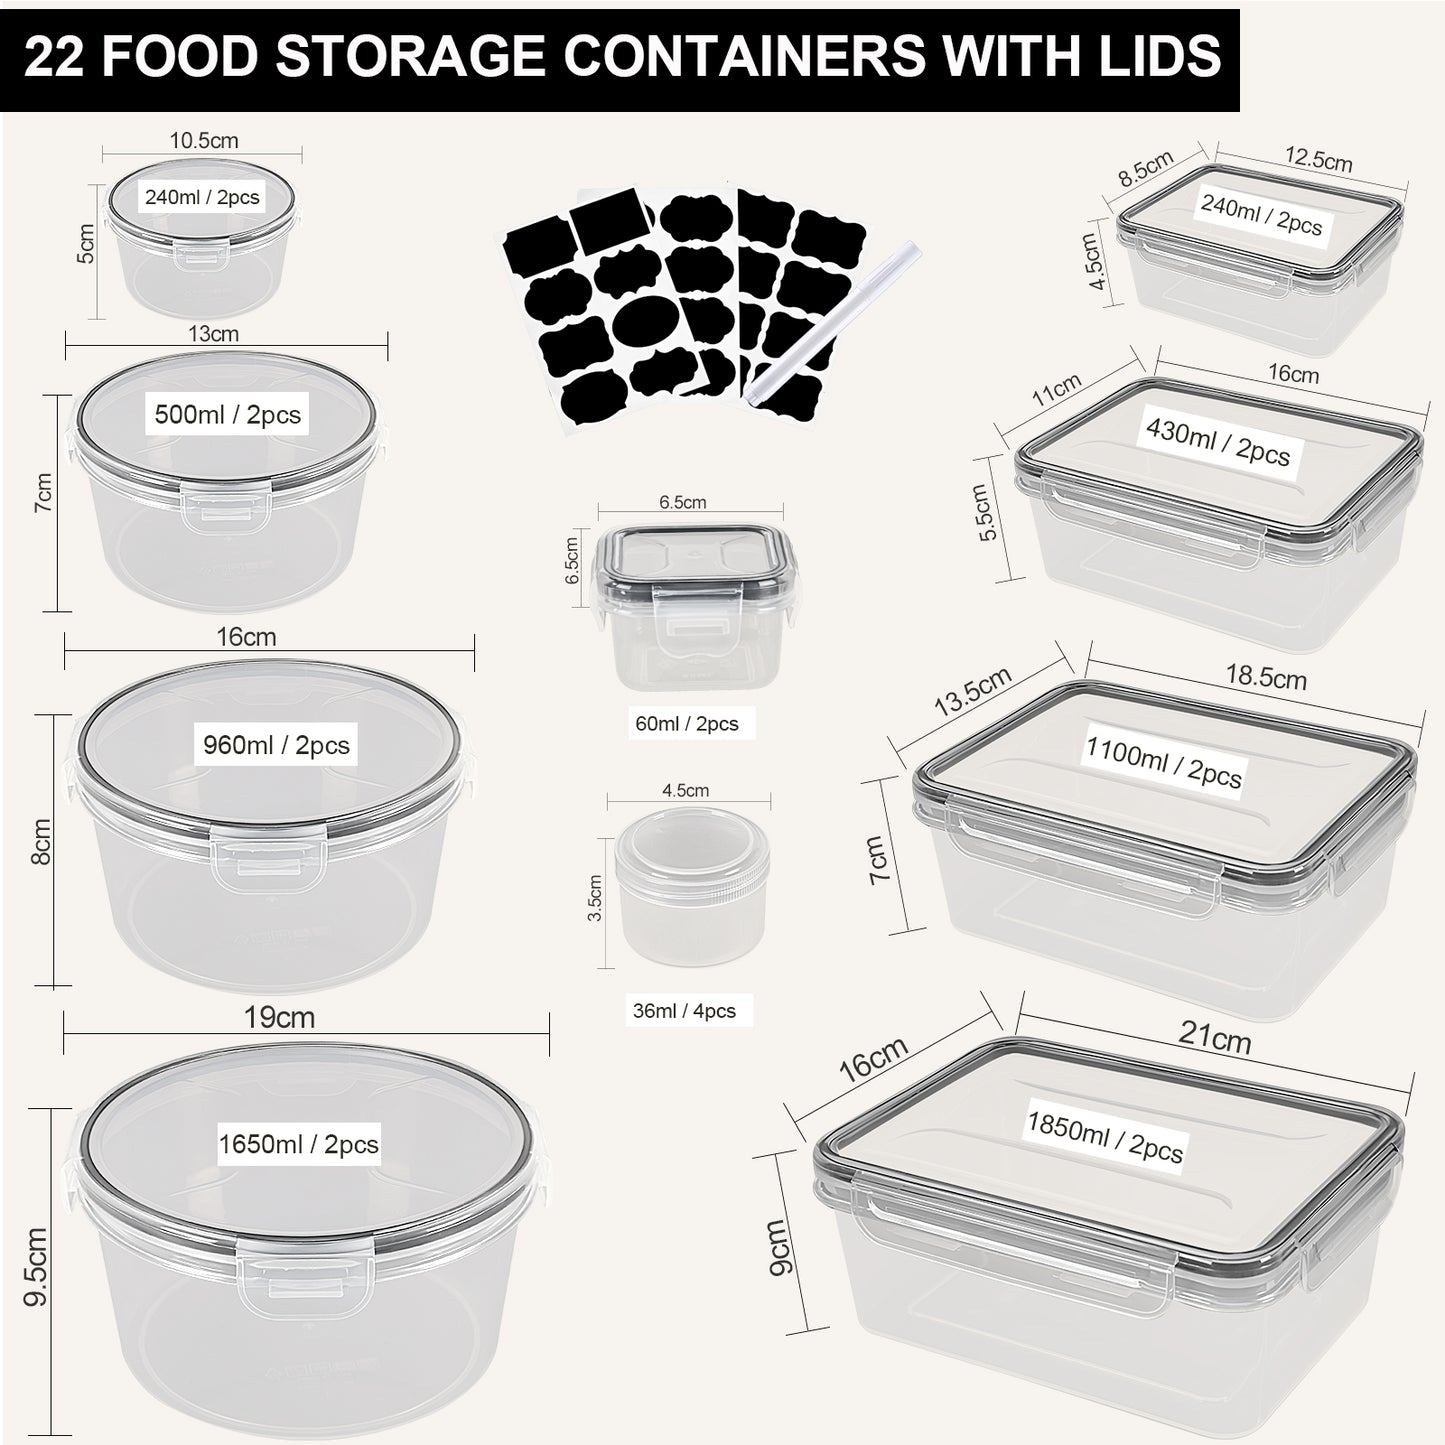 GoMaihe Conteneurs de Stockage Alimentaire avec Couvercles 44 Pièces (22 Conteneurs + 22 Couvercles) pour Lave-Vaisselle, Micro-ondes et Congélateur, Sans BPA